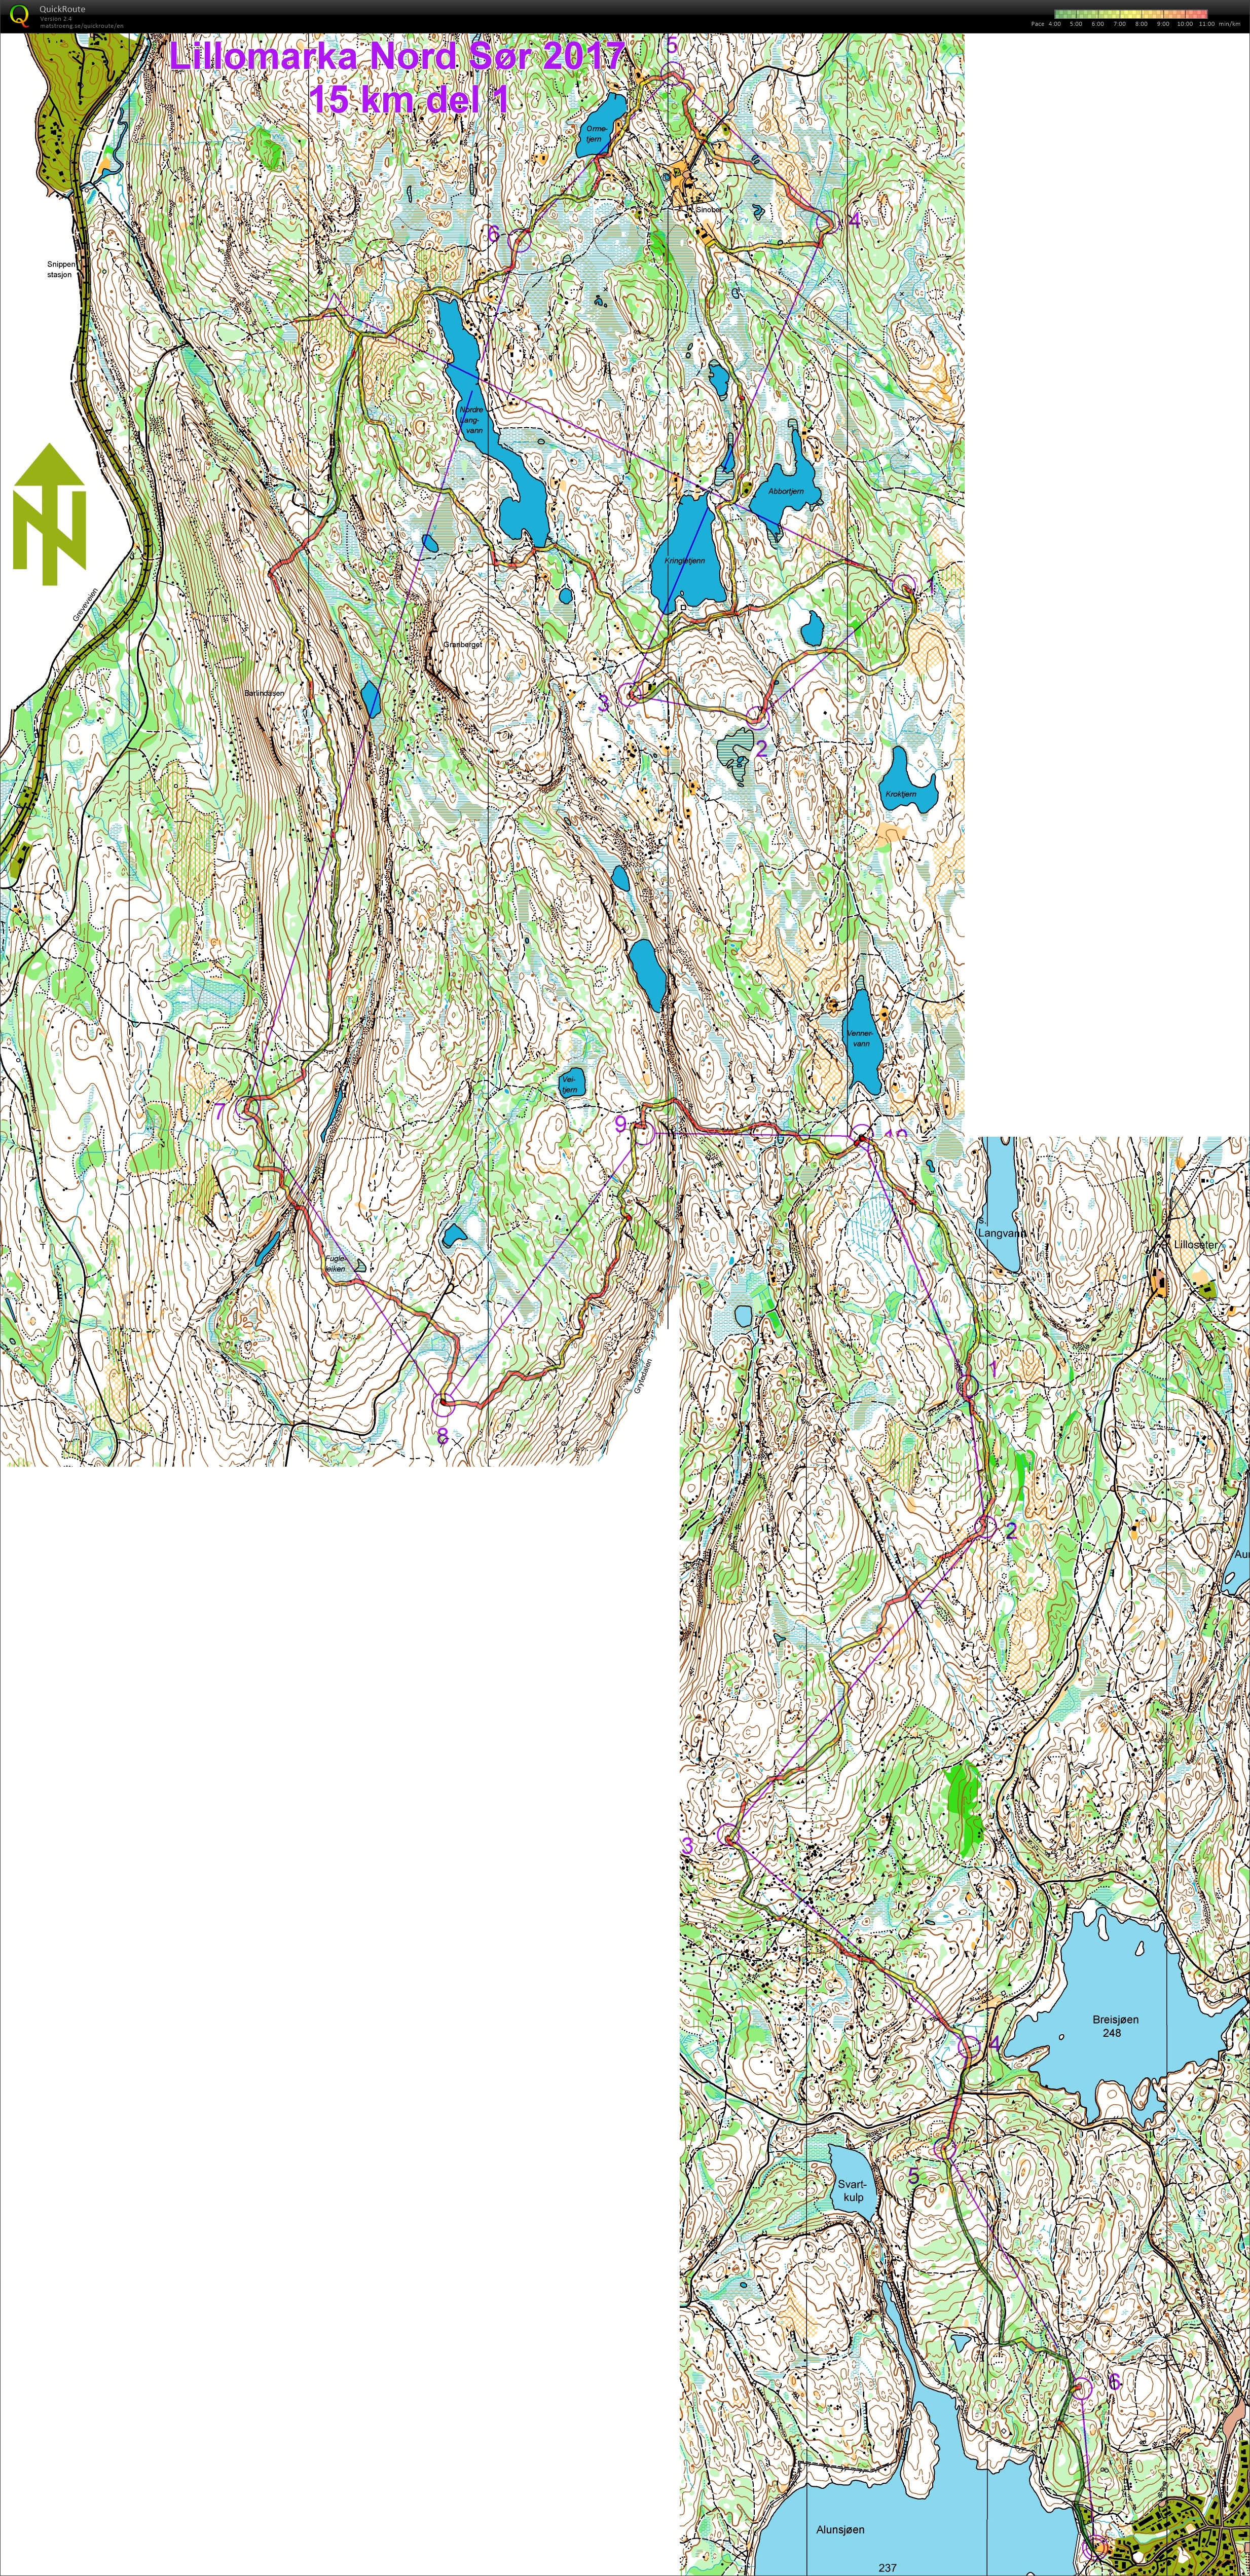 Lillomarka Nord/Sør 15km (2017-10-15)